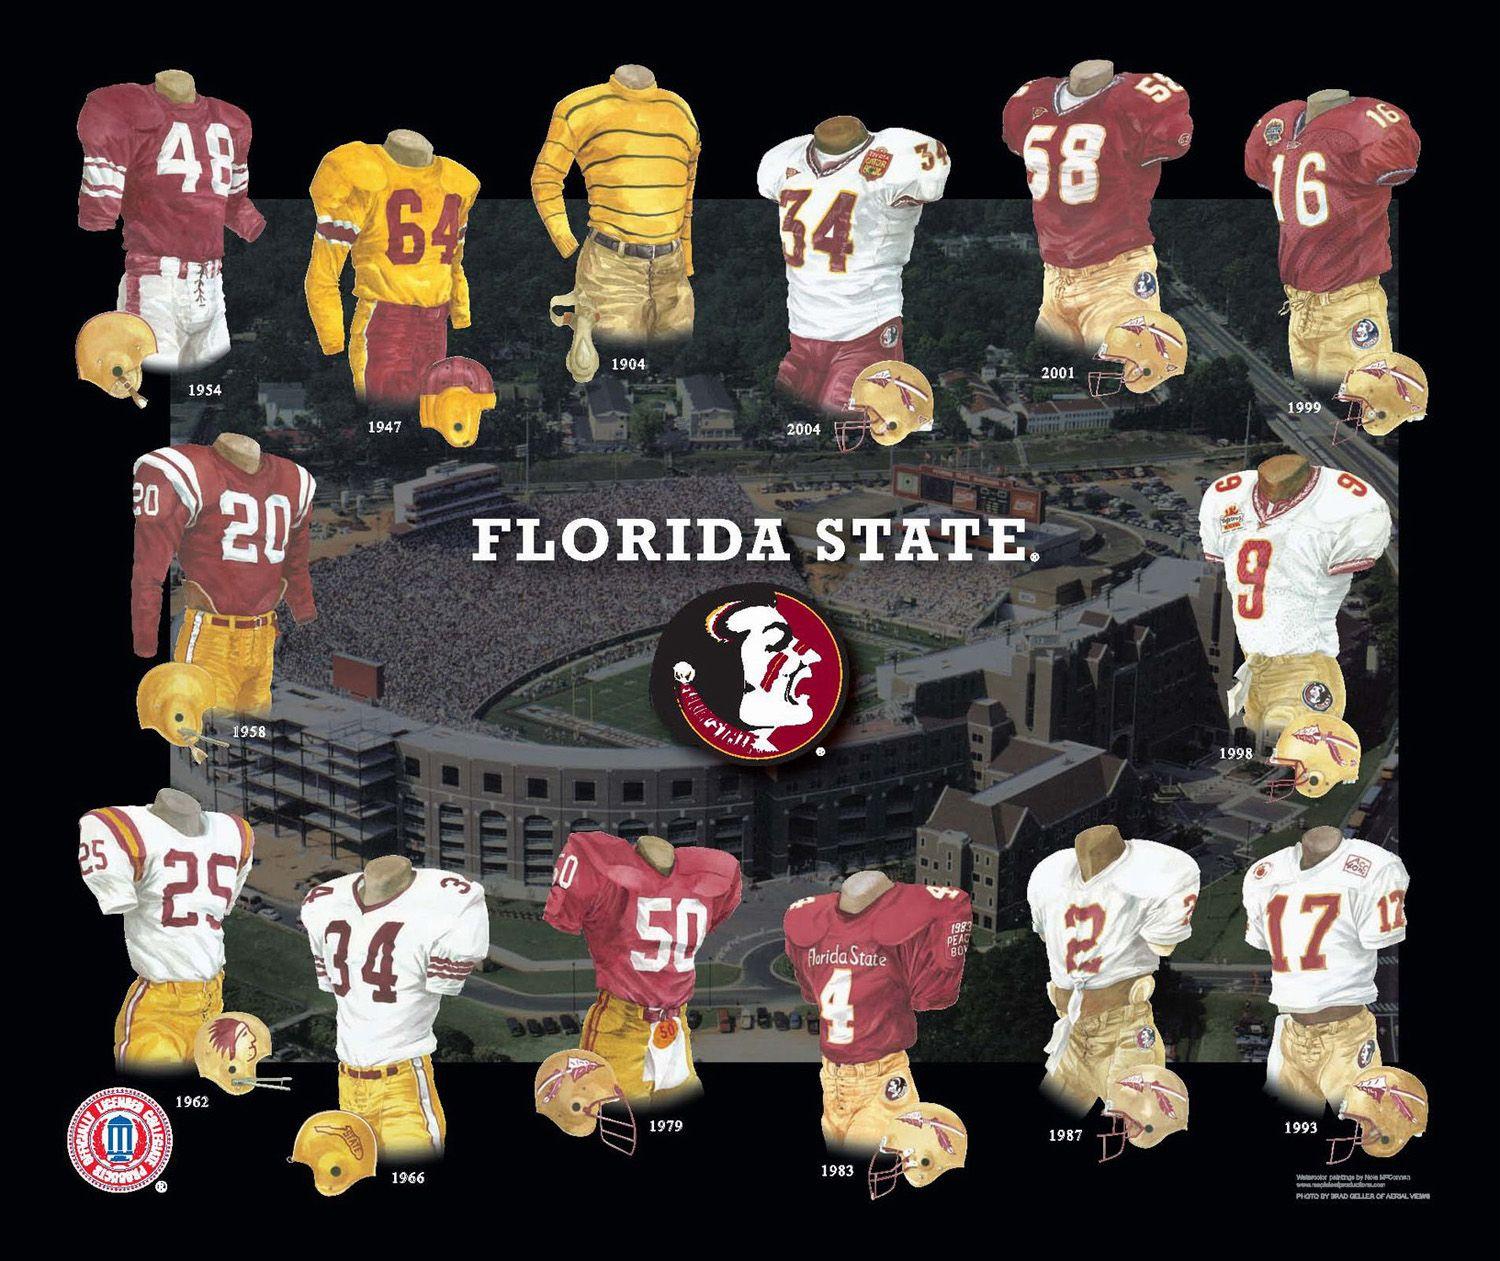 Florida State Seminoles Football Team Logo - Florida State Seminoles Football Uniform and Team History | Heritage ...